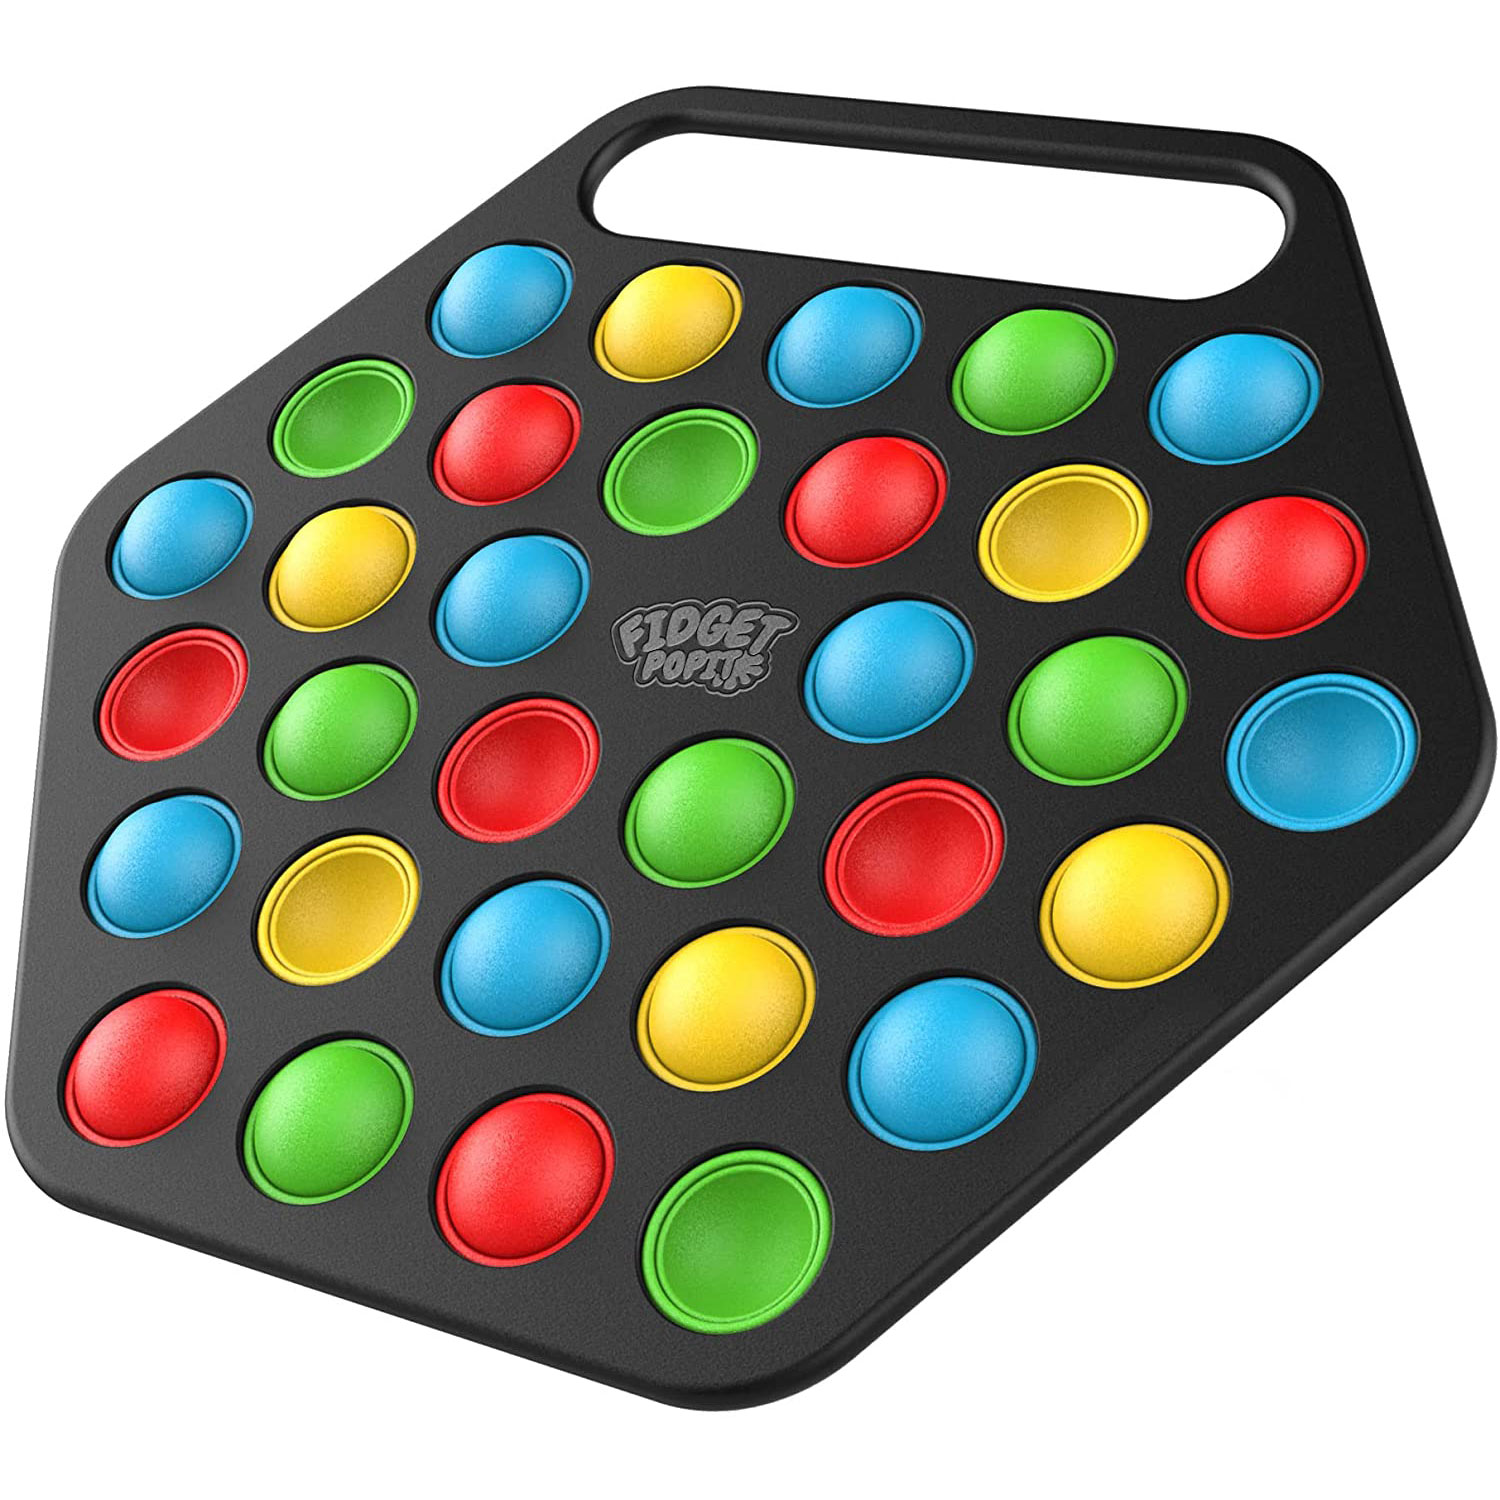 32 Colors Hard Shell Pop It Fidget Toy Board